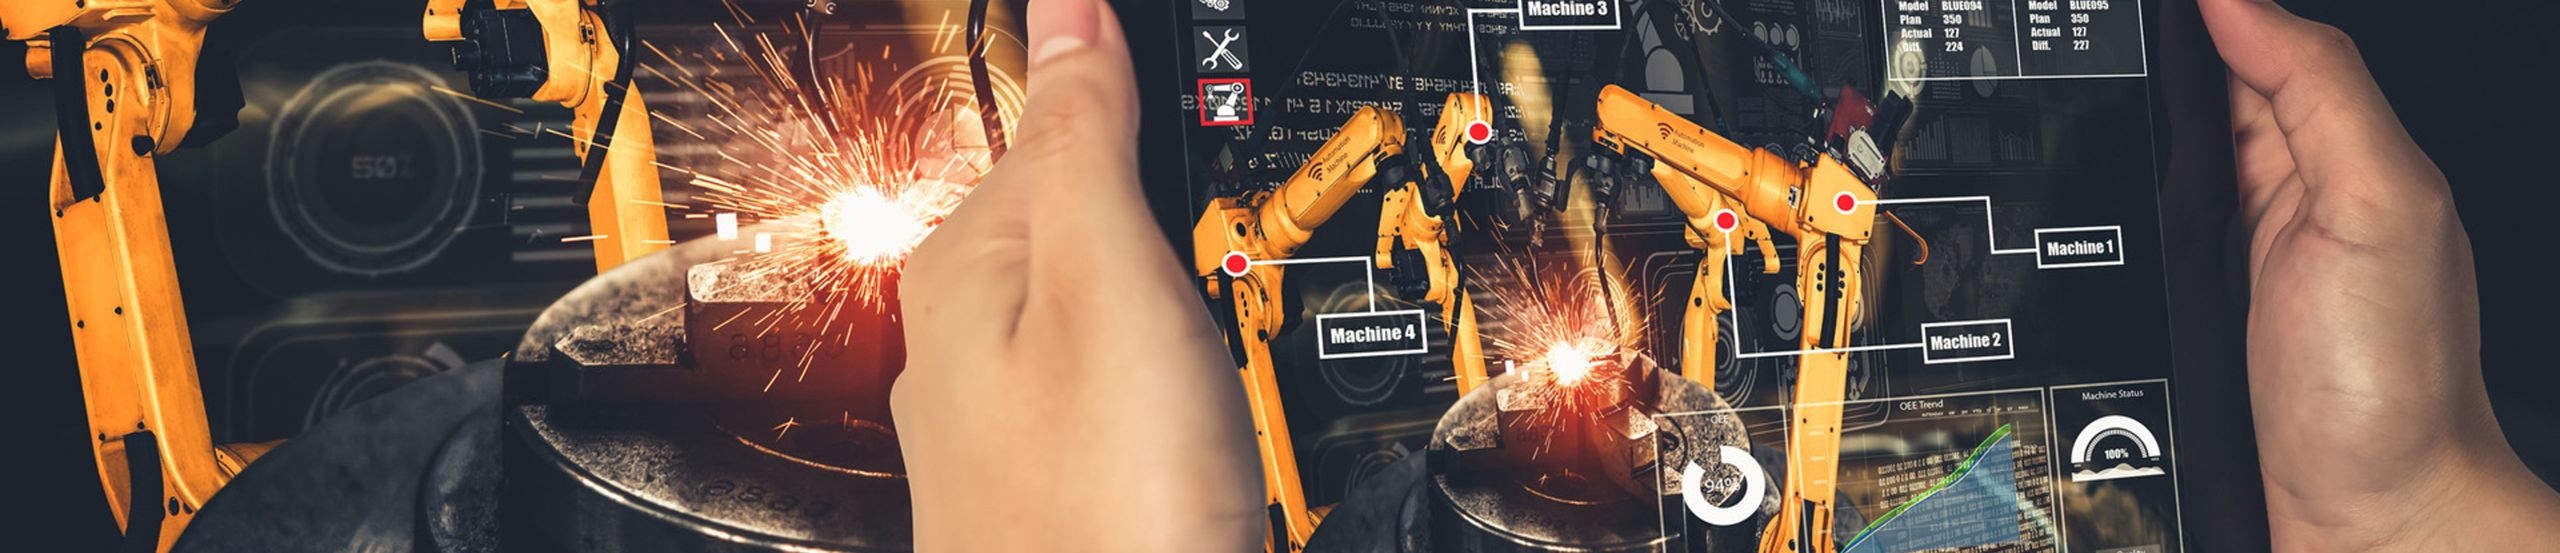 Zwei Hände halten ein Tablet, auf dem die Augmented-Reality-Darstellung eines Industrieroboters zu sehen ist